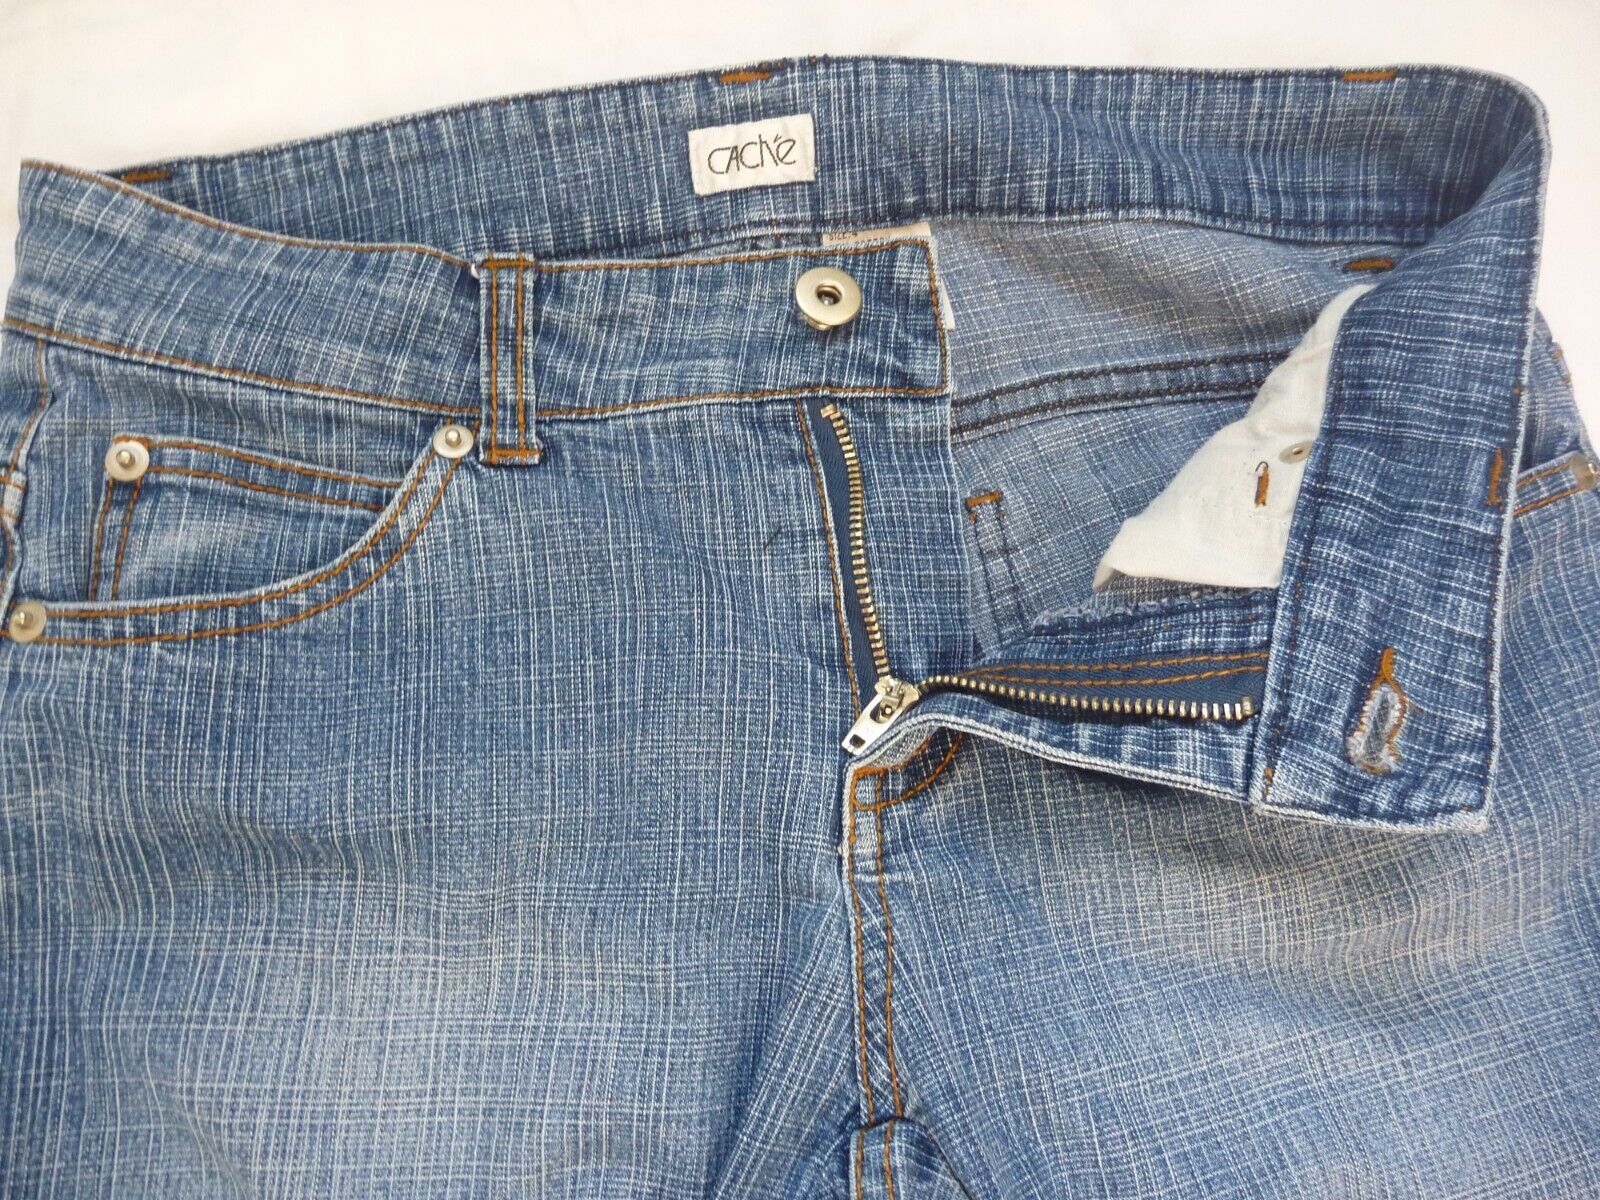 CACHE Capri Jeans Denim Blue Cropped Size 4 - image 2